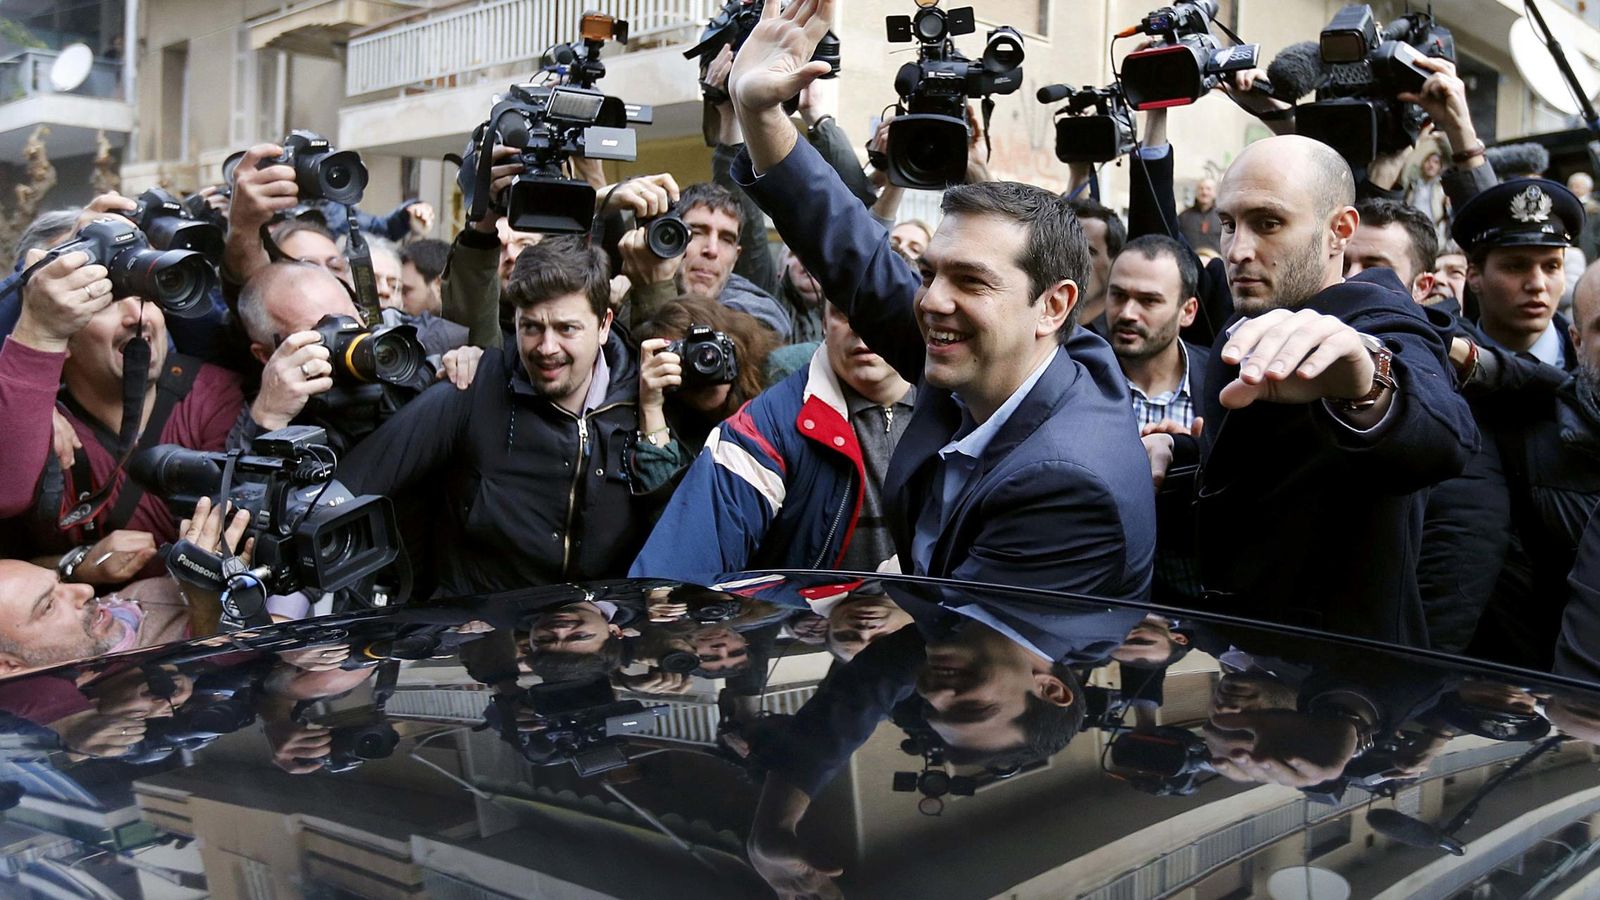 Foto: El primer ministro griego, Alexis Tsipras, a su llegada a un colegio electoral en Atenas, el 25 de enero de 2015. (Reuters)